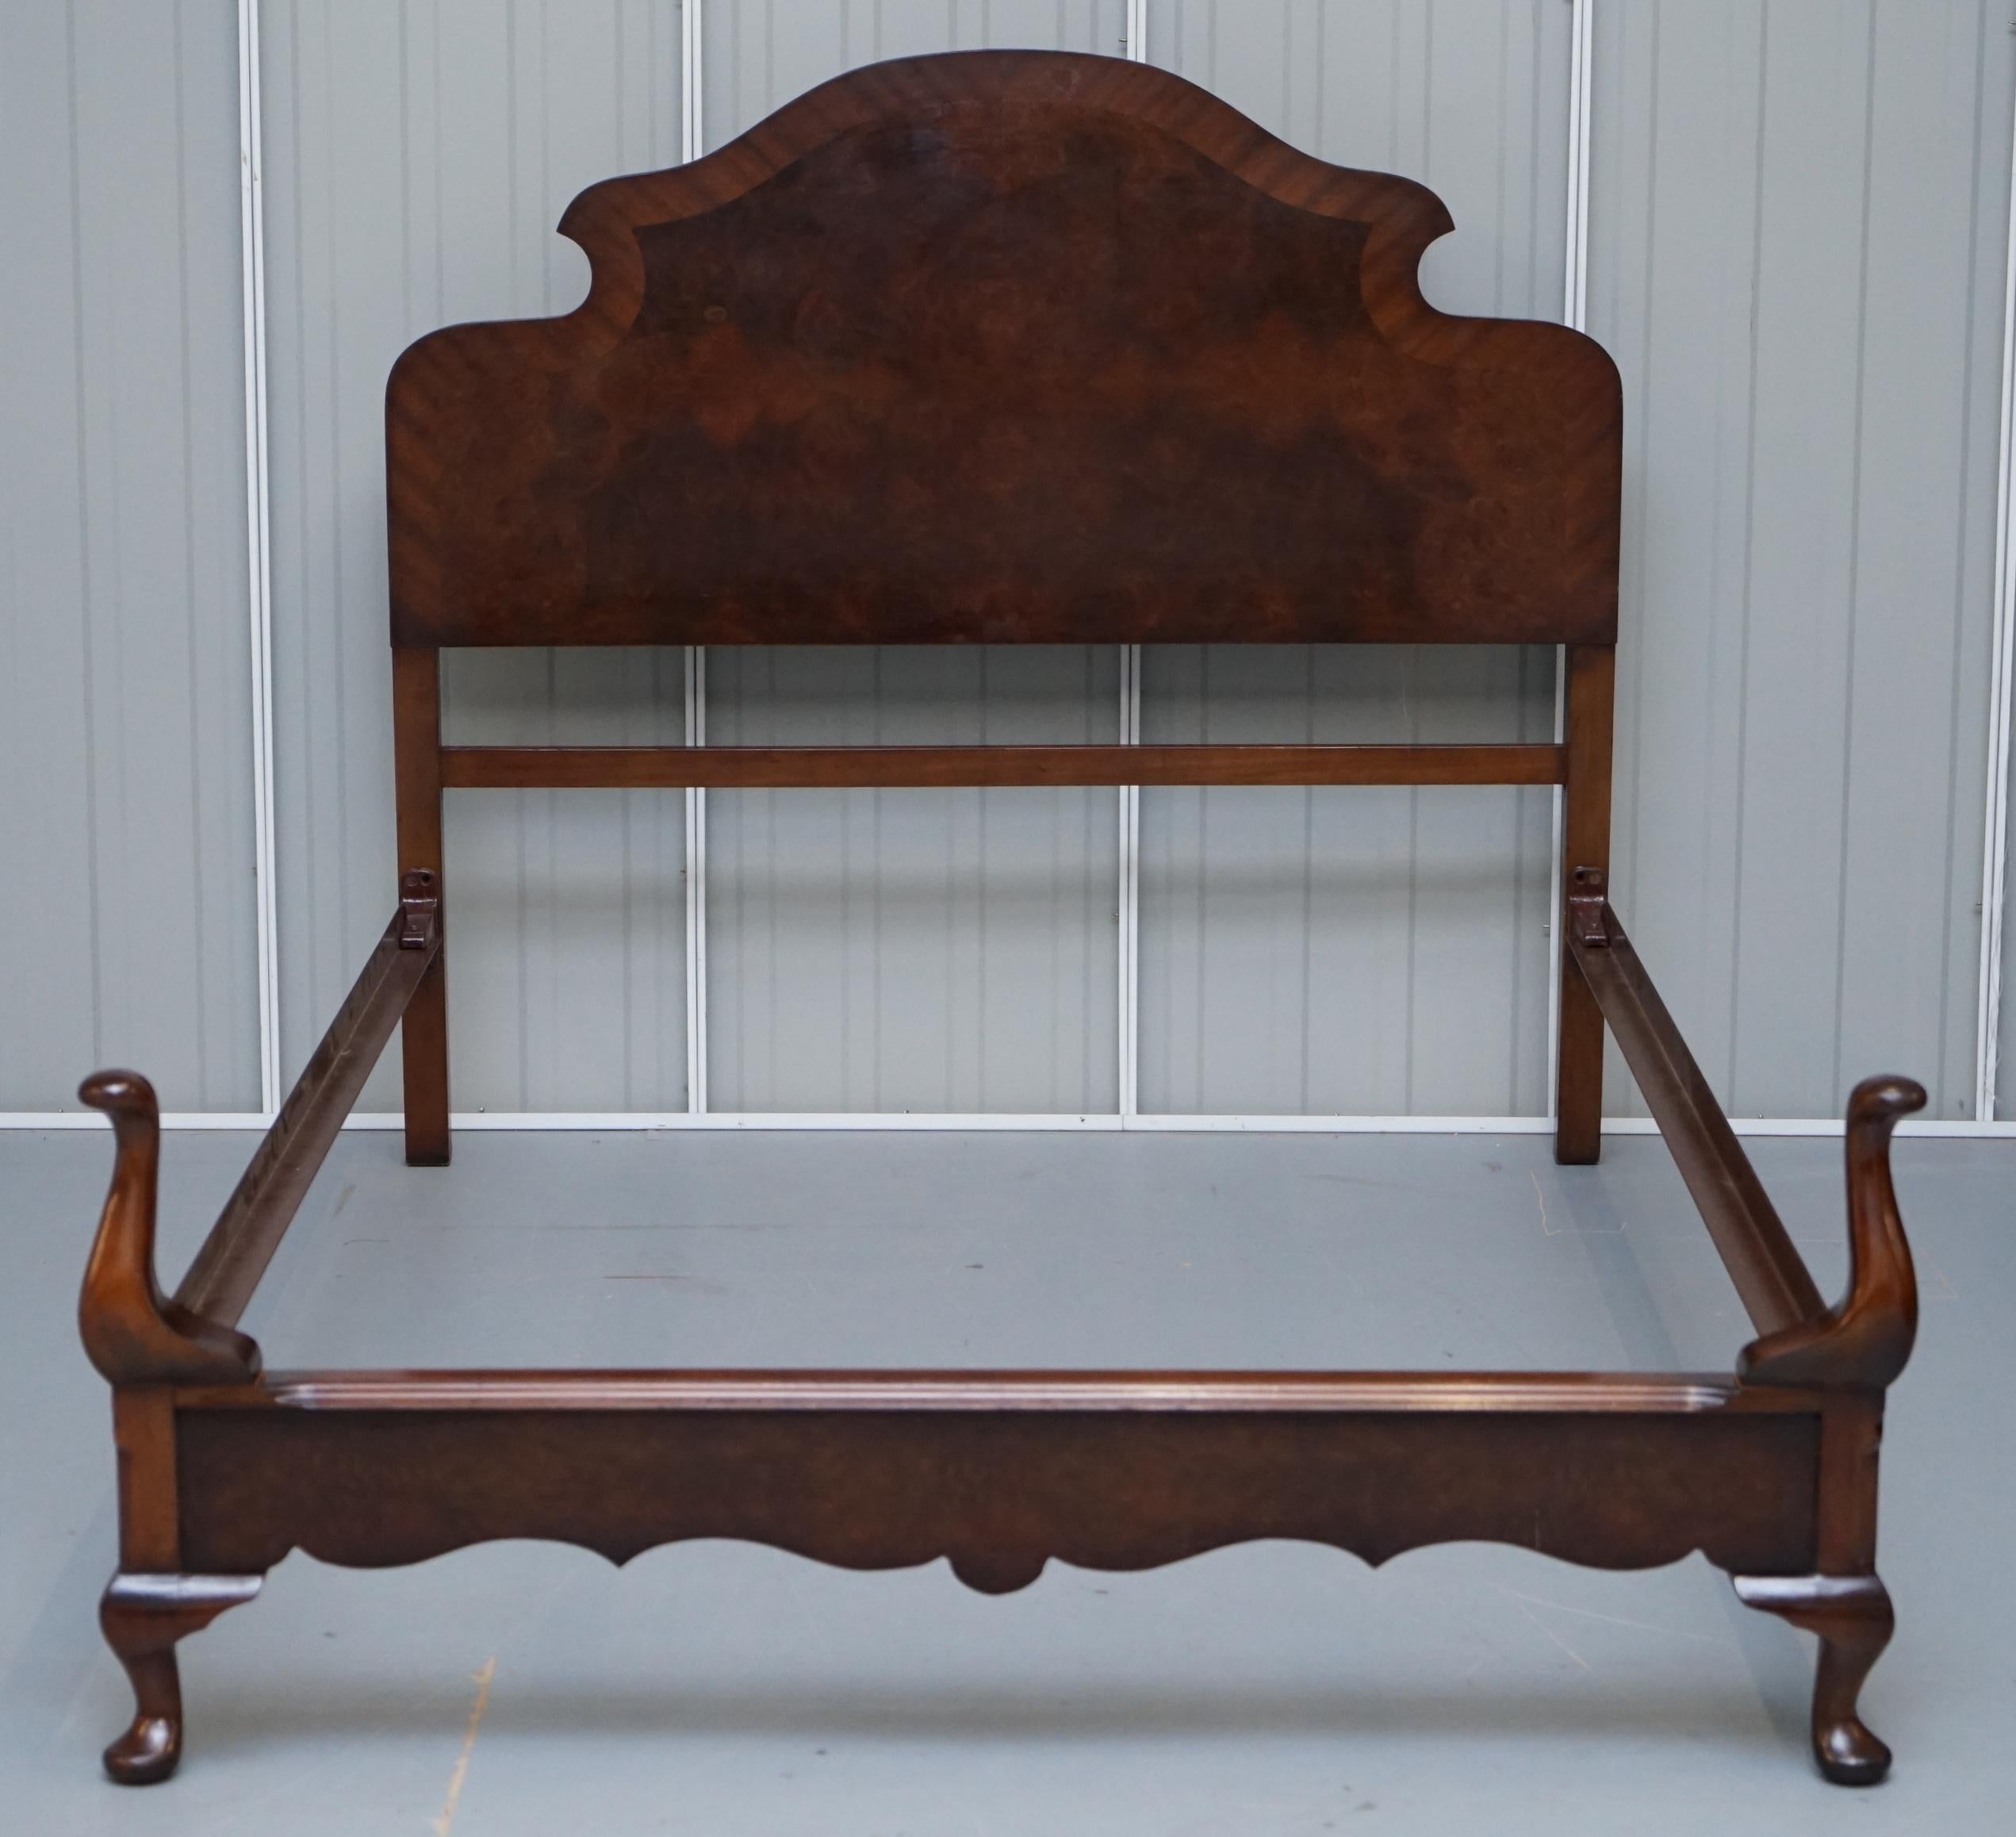 1900 bed frame